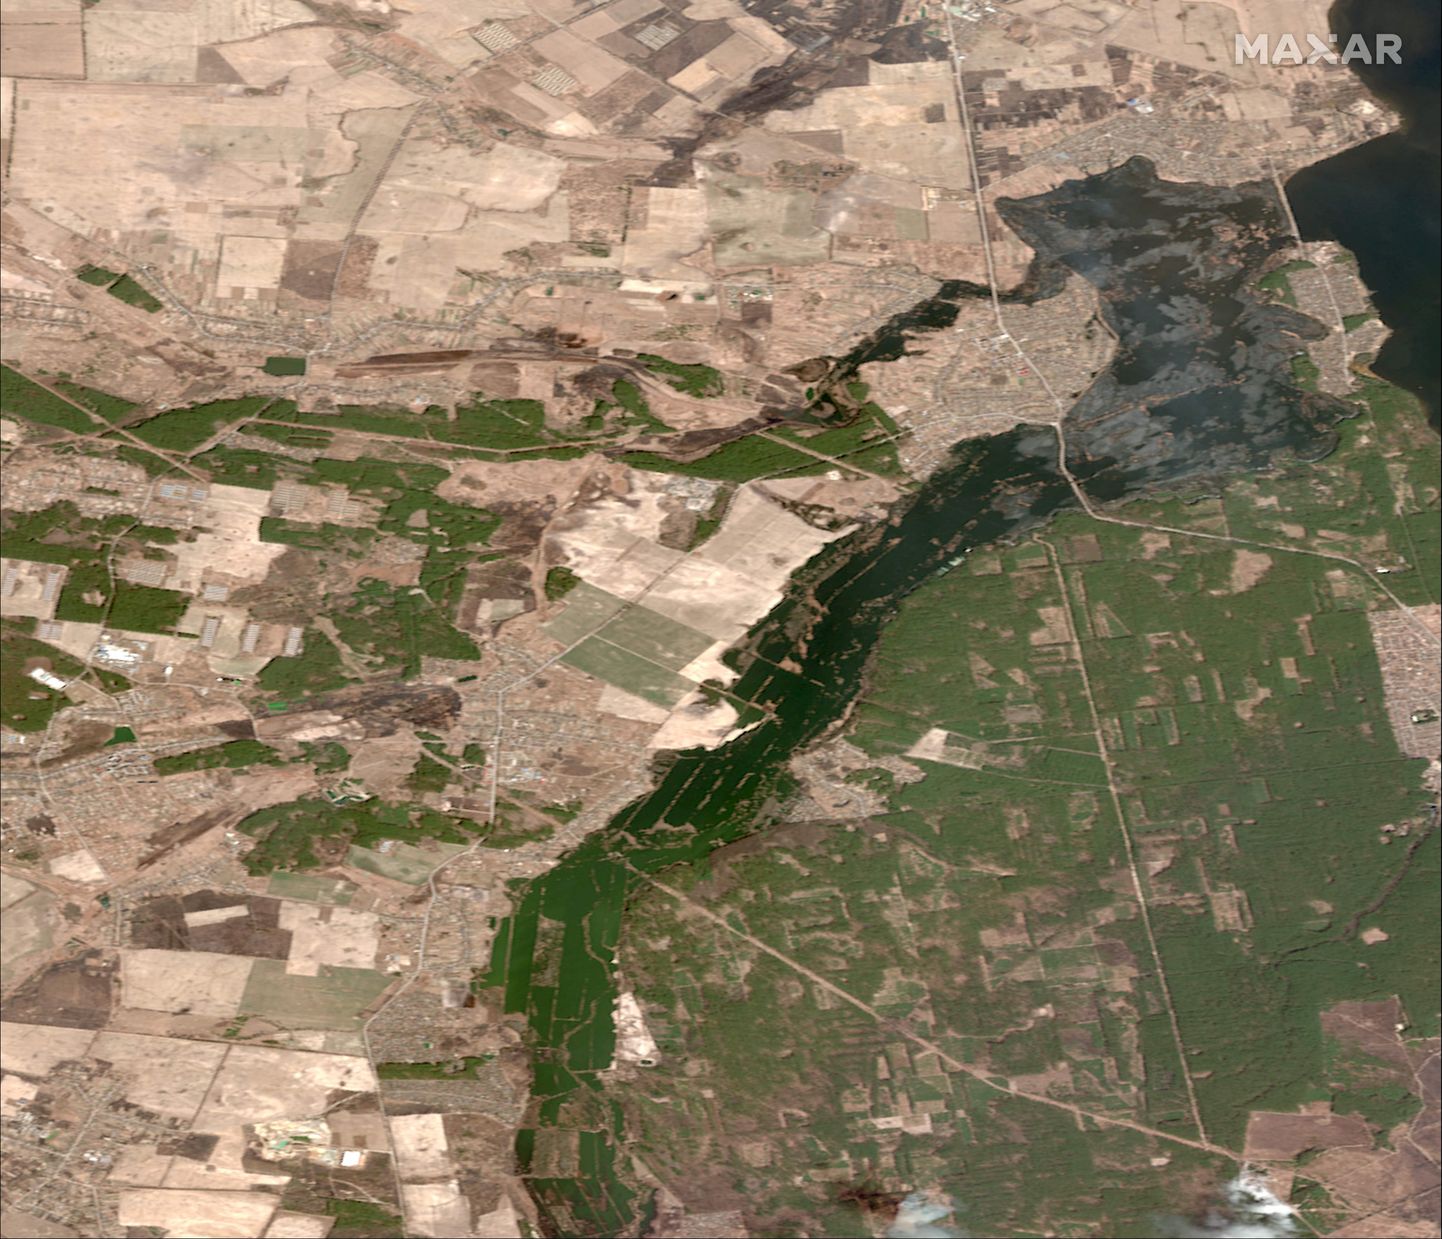 С помощью спутниковых снимков можно отслеживать изменения в землепользовании и плодородие сельскохозяйственных земель. На спутниковом иллюстративном снимке видны затопленные поля Украины.